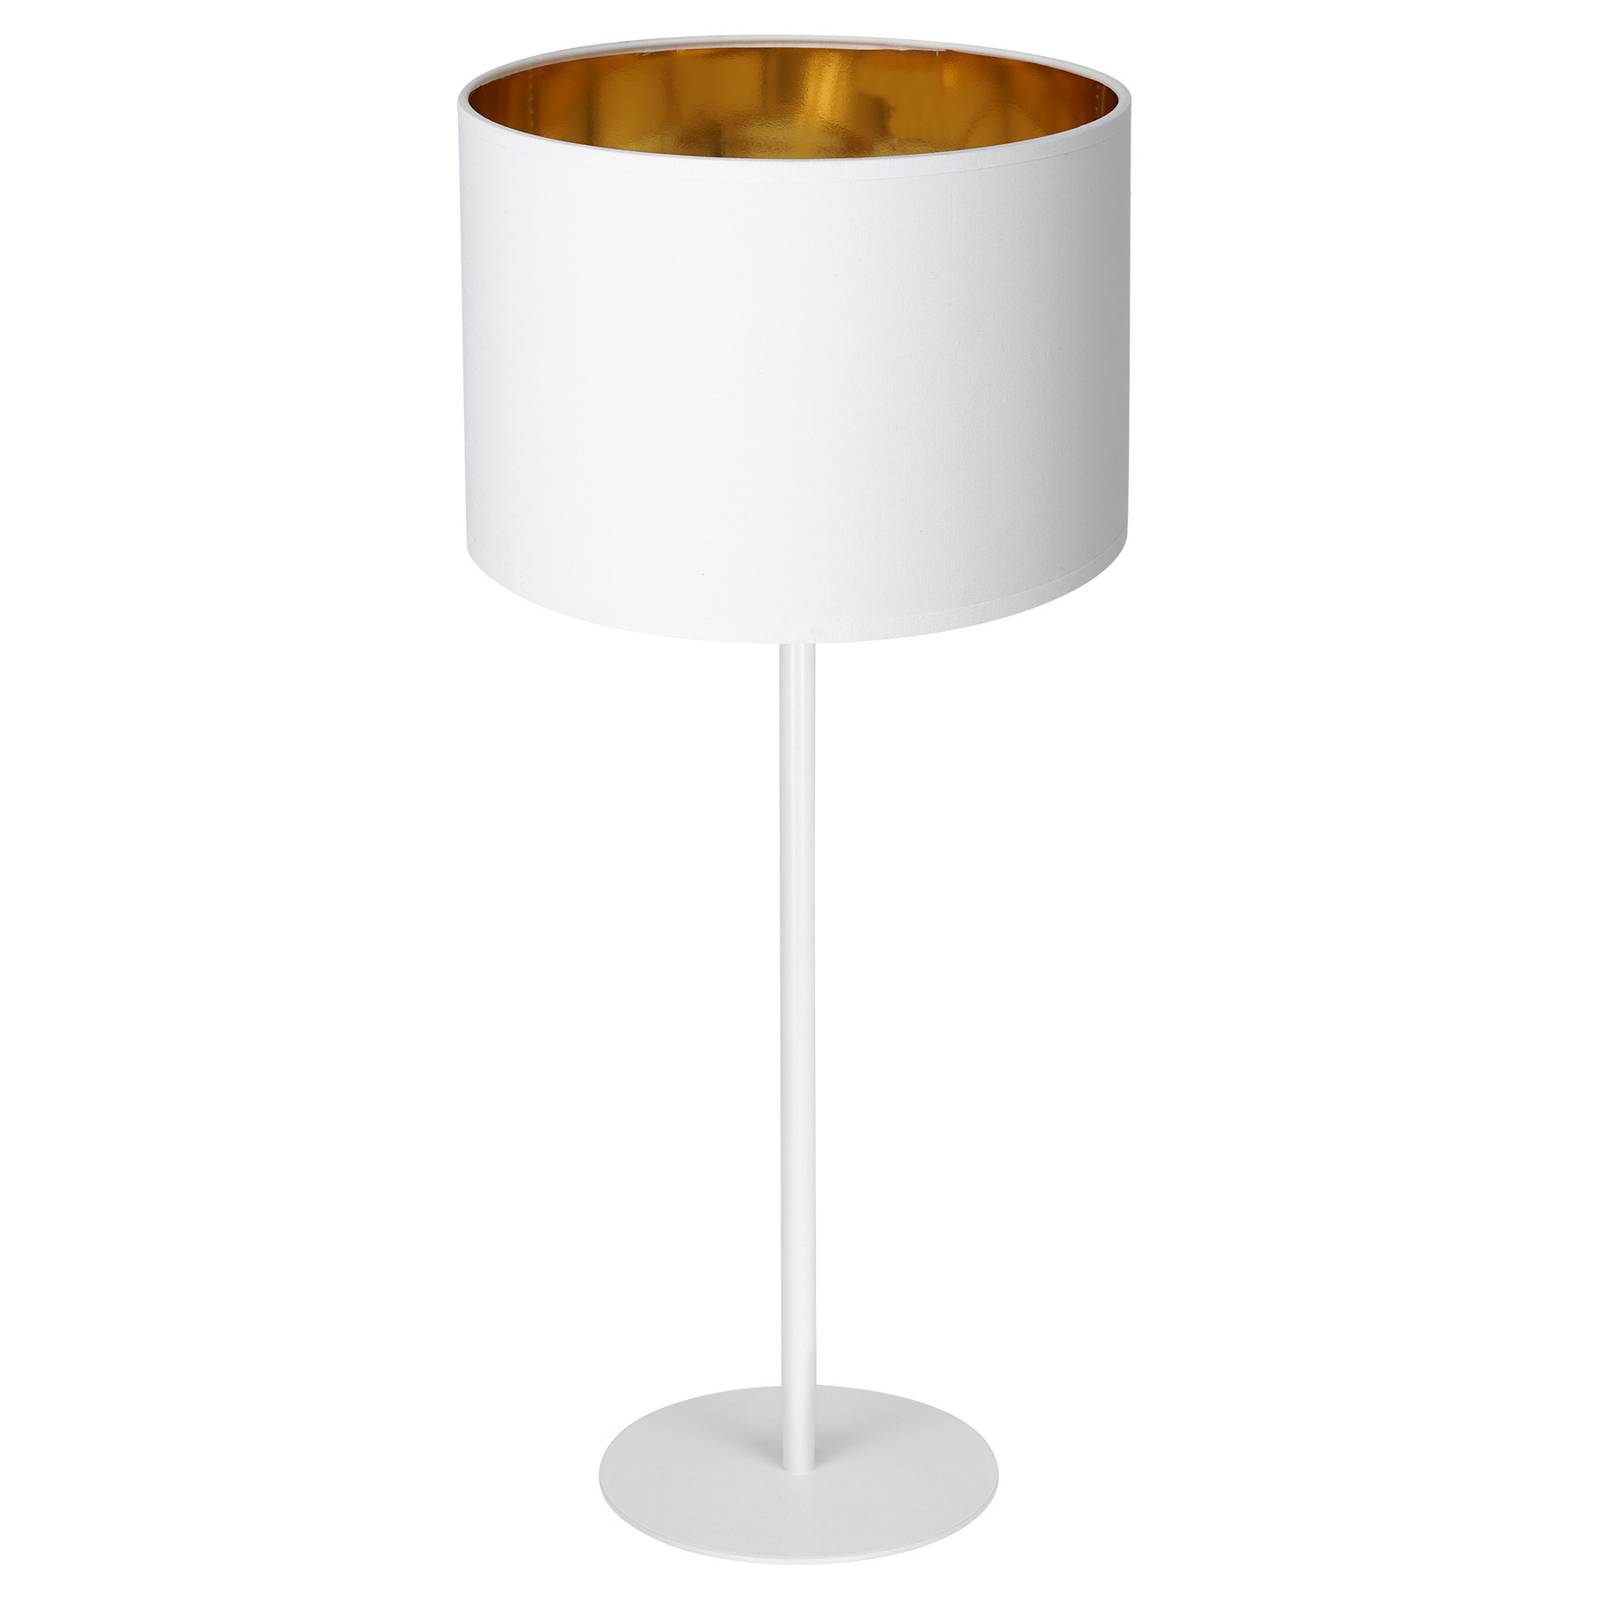 Soho bordlampe cylinderformet højde 55cm hvid/guld